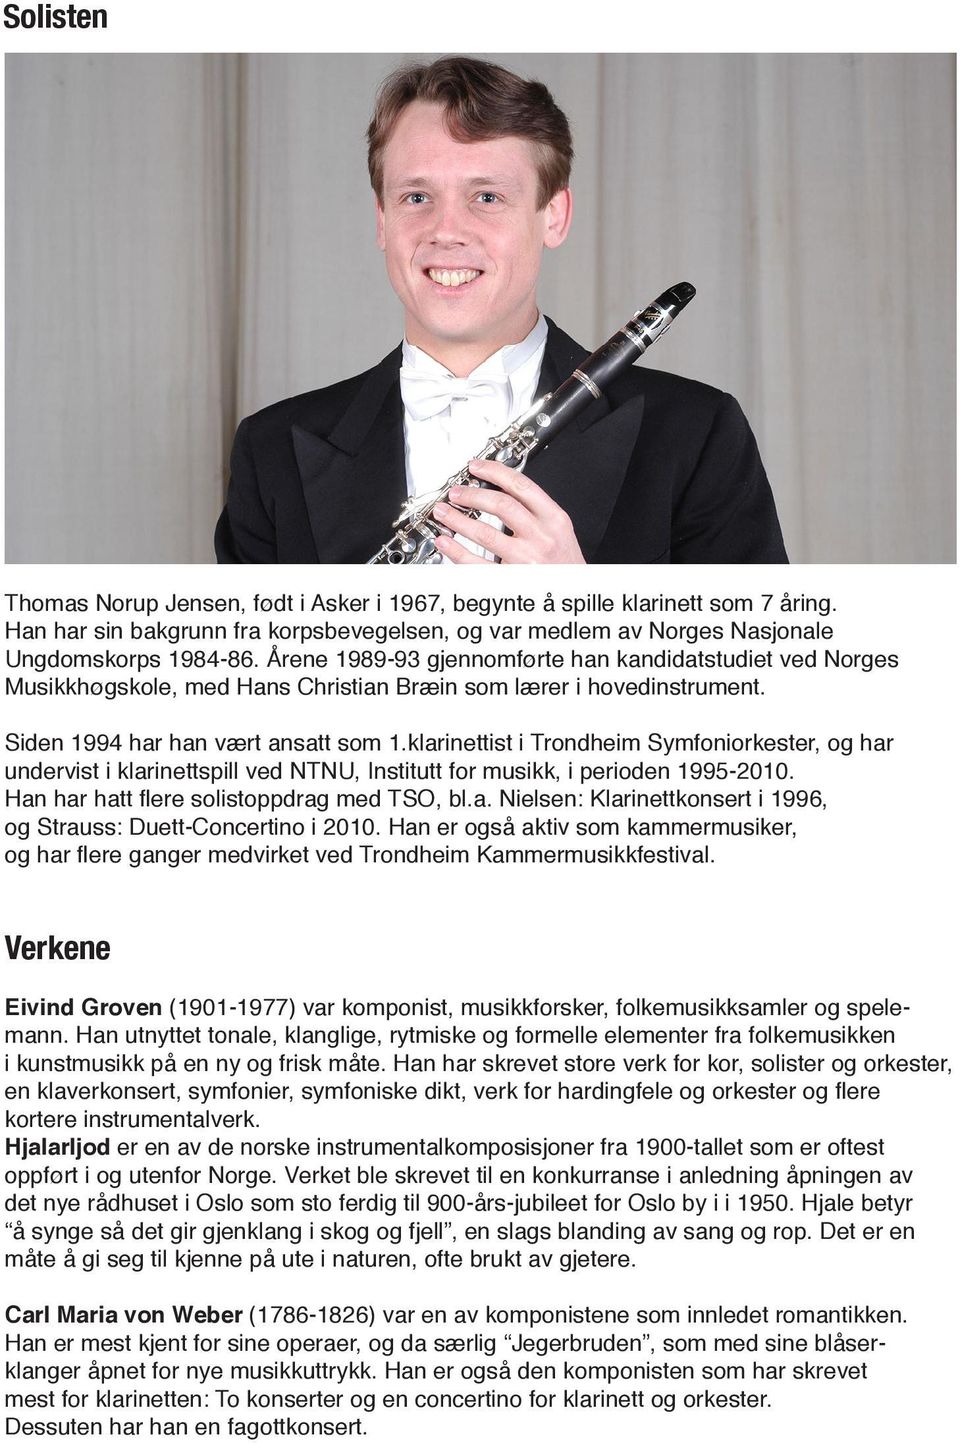 klarinettist i Trondheim Symfoniorkester, og har undervist i klarinettspill ved NTNU, Institutt for musikk, i perioden 1995-2010. Han har hatt flere solistoppdrag med TSO, bl.a. Nielsen: Klarinettkonsert i 1996, og Strauss: Duett-Concertino i 2010.